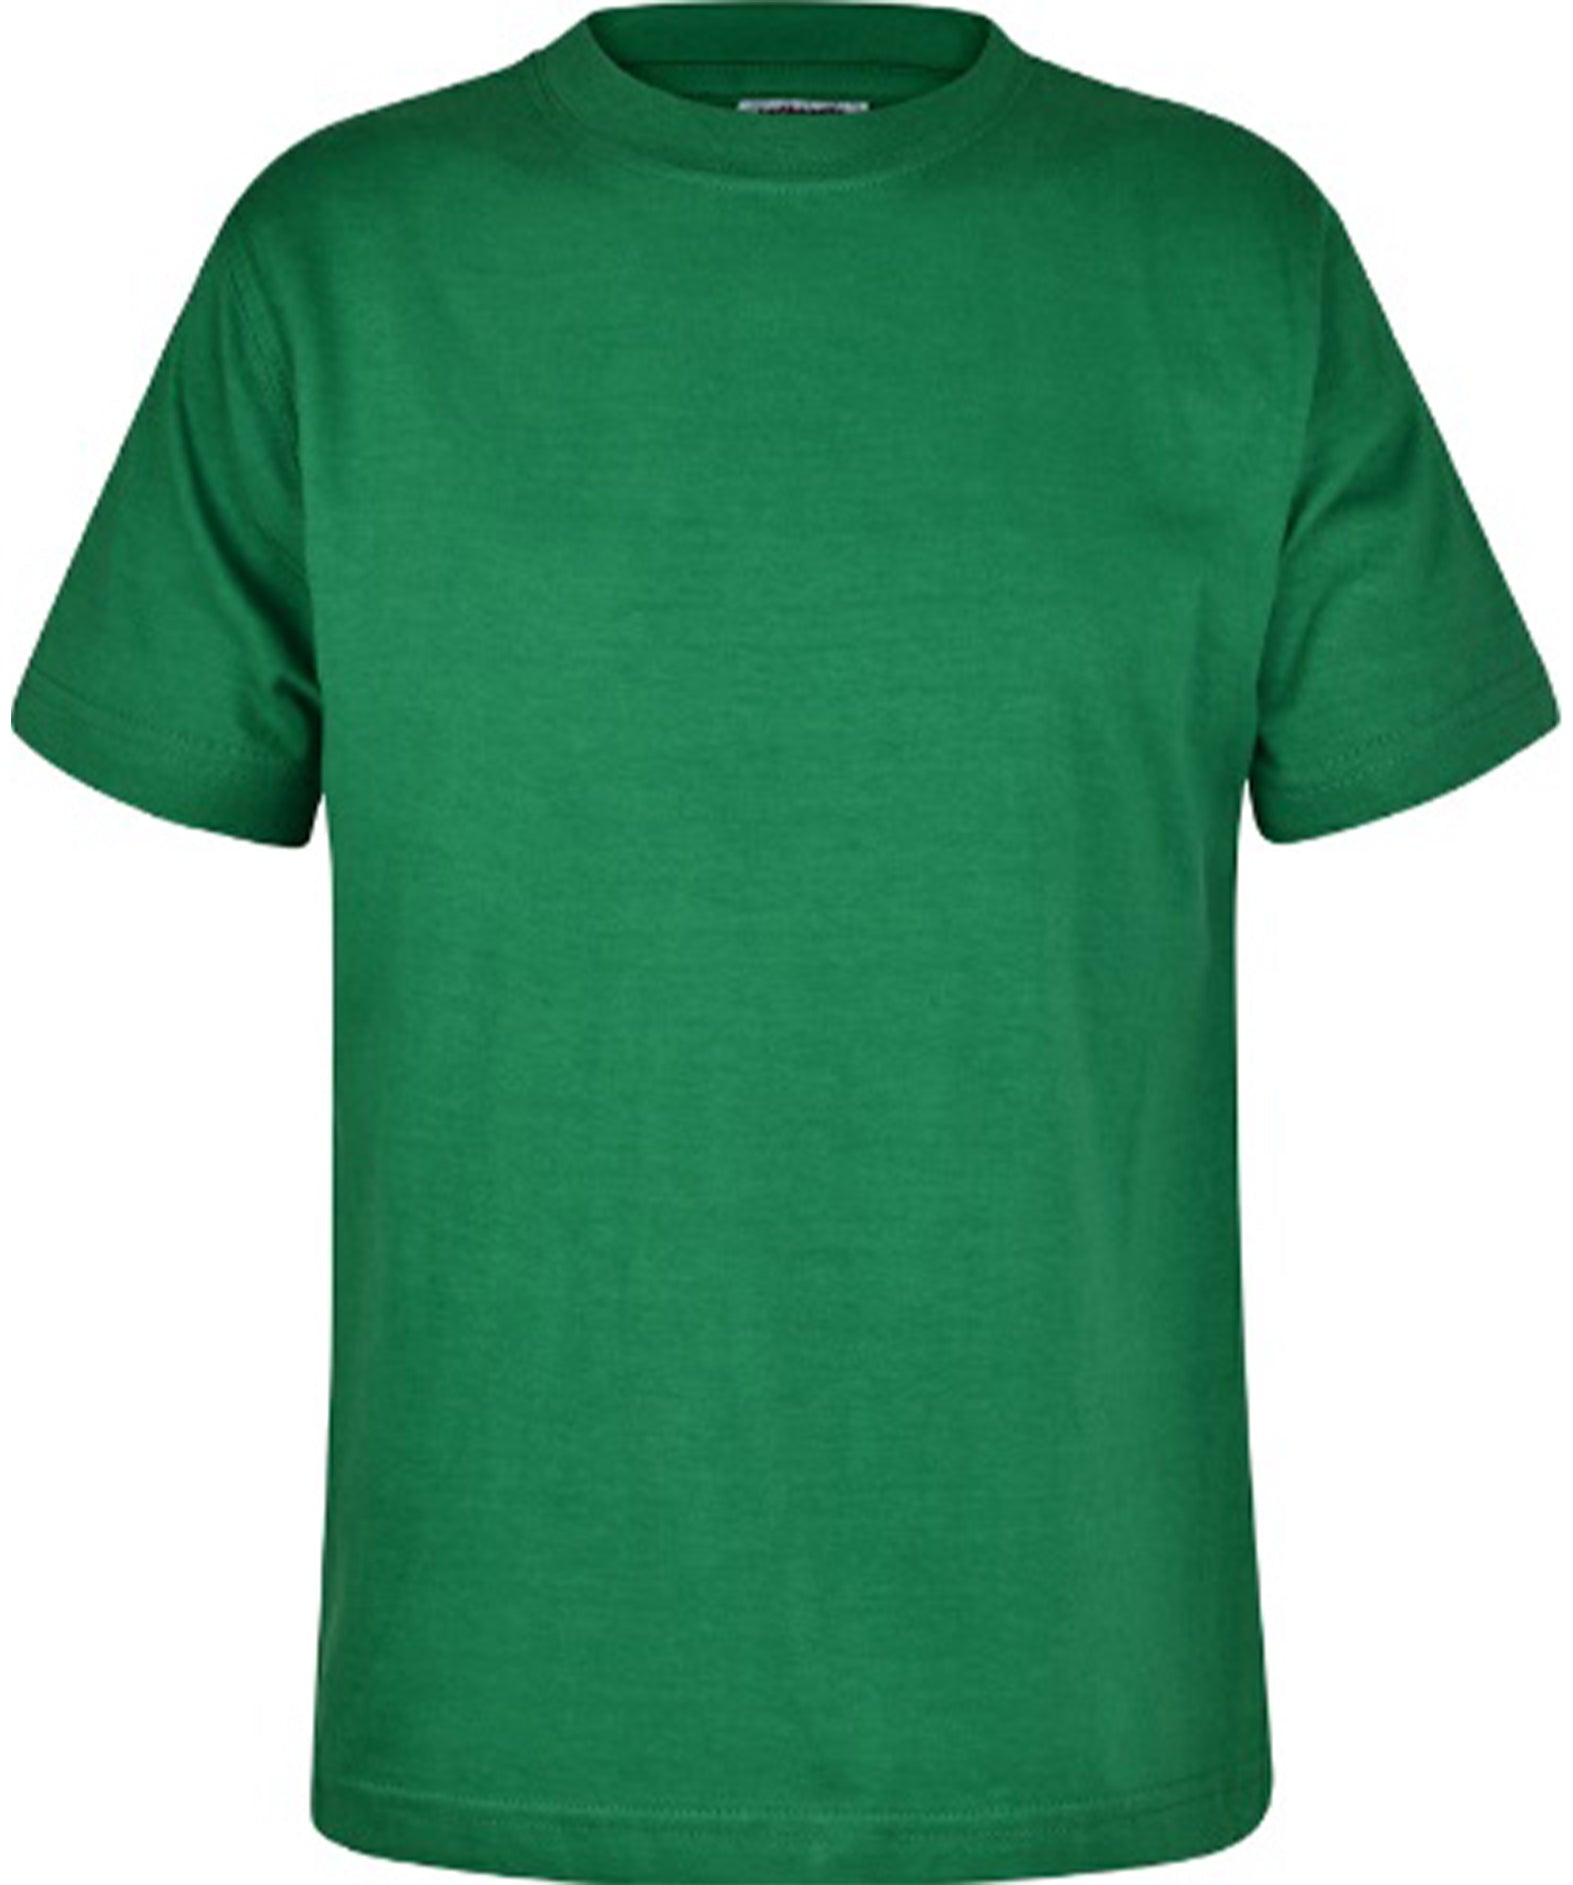 Emerald - Unisex Cotton T-Shirt - School Uniform Shop